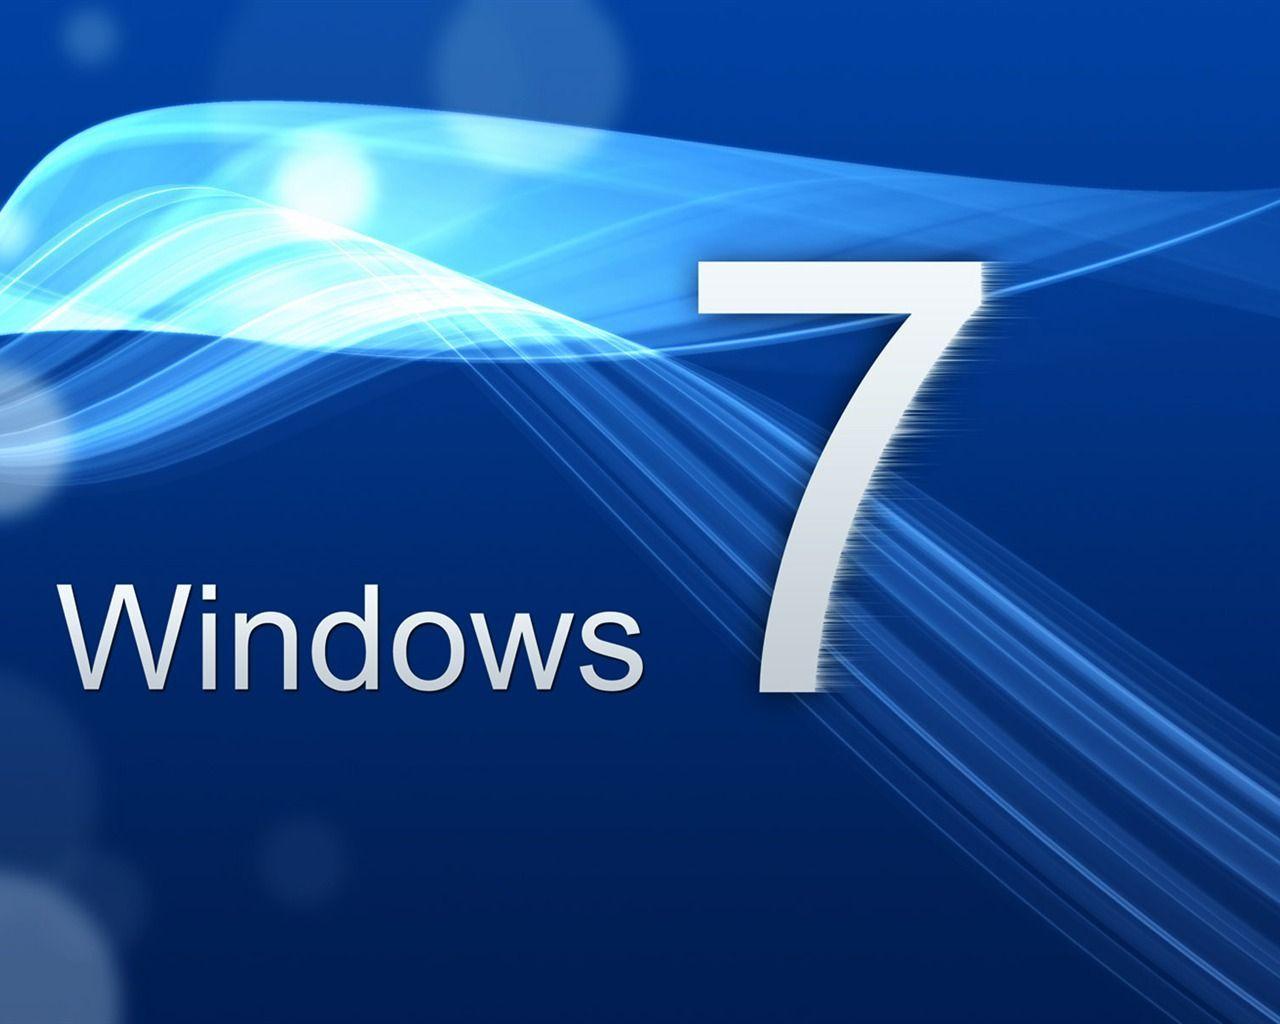 Wallpaper Windows 7 Ultimate 3d Keren Image Num 73